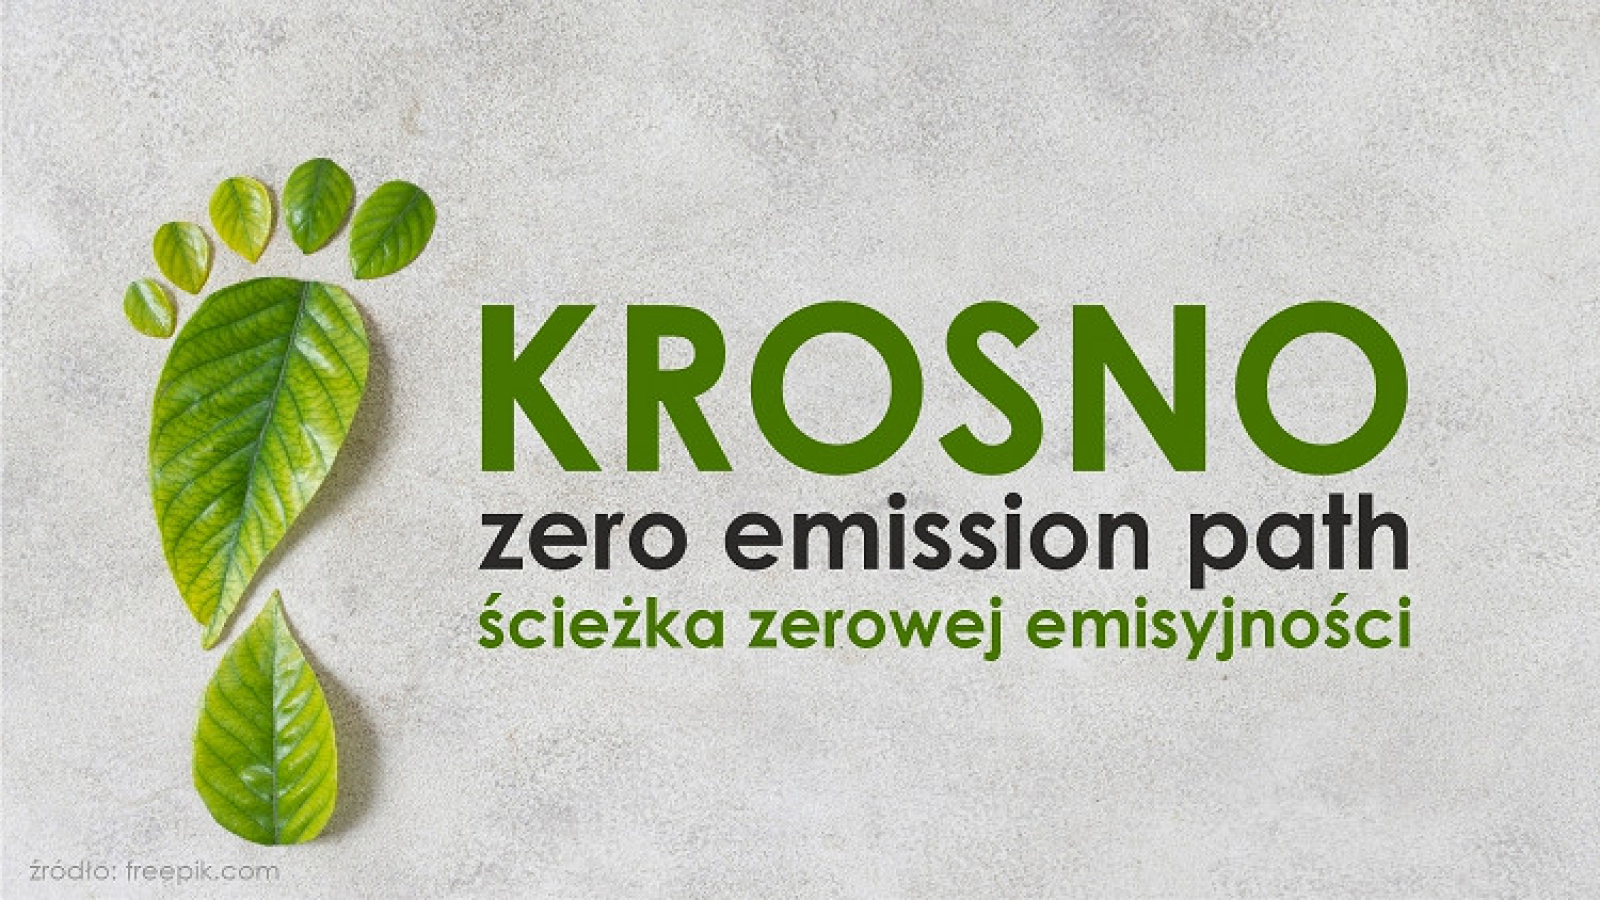 Miasto Krosno chce być samowystarczalne energetycznie do 2040 roku